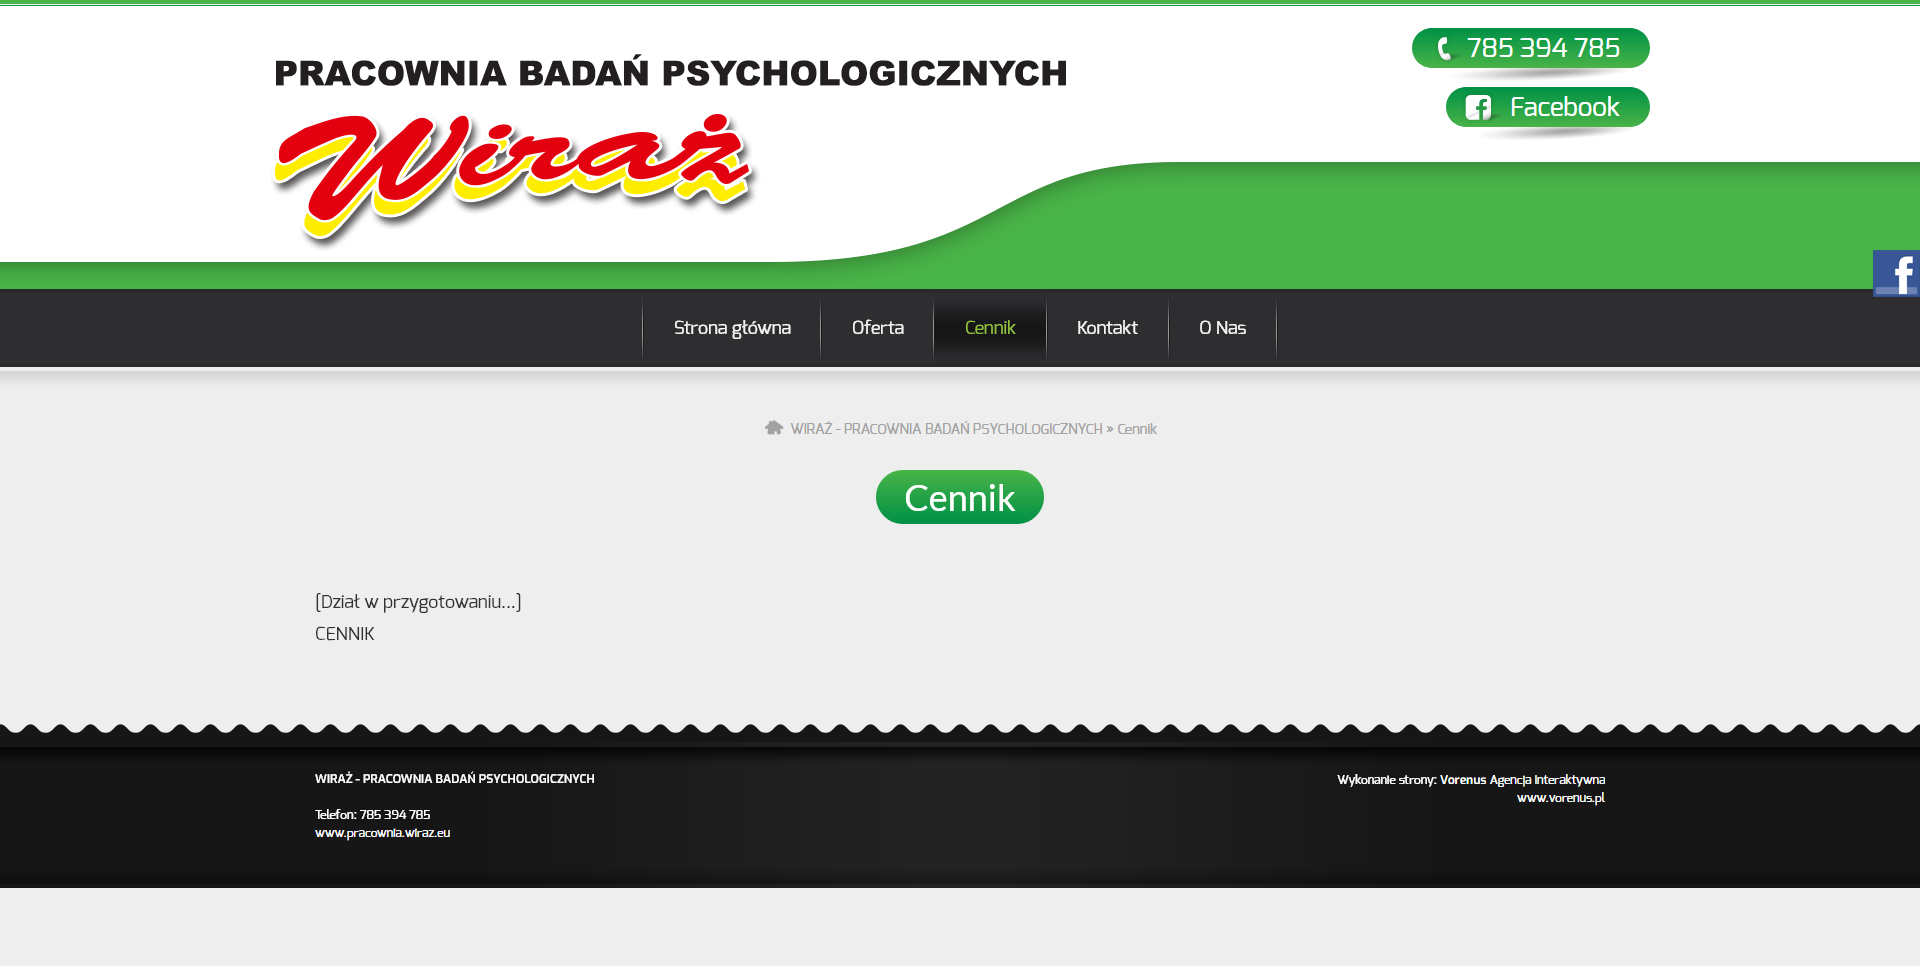 WIRAŻ - Pracownia Badań Psychologicznych. Strona internetowa. Cennik. Projekt Vorenus.pl